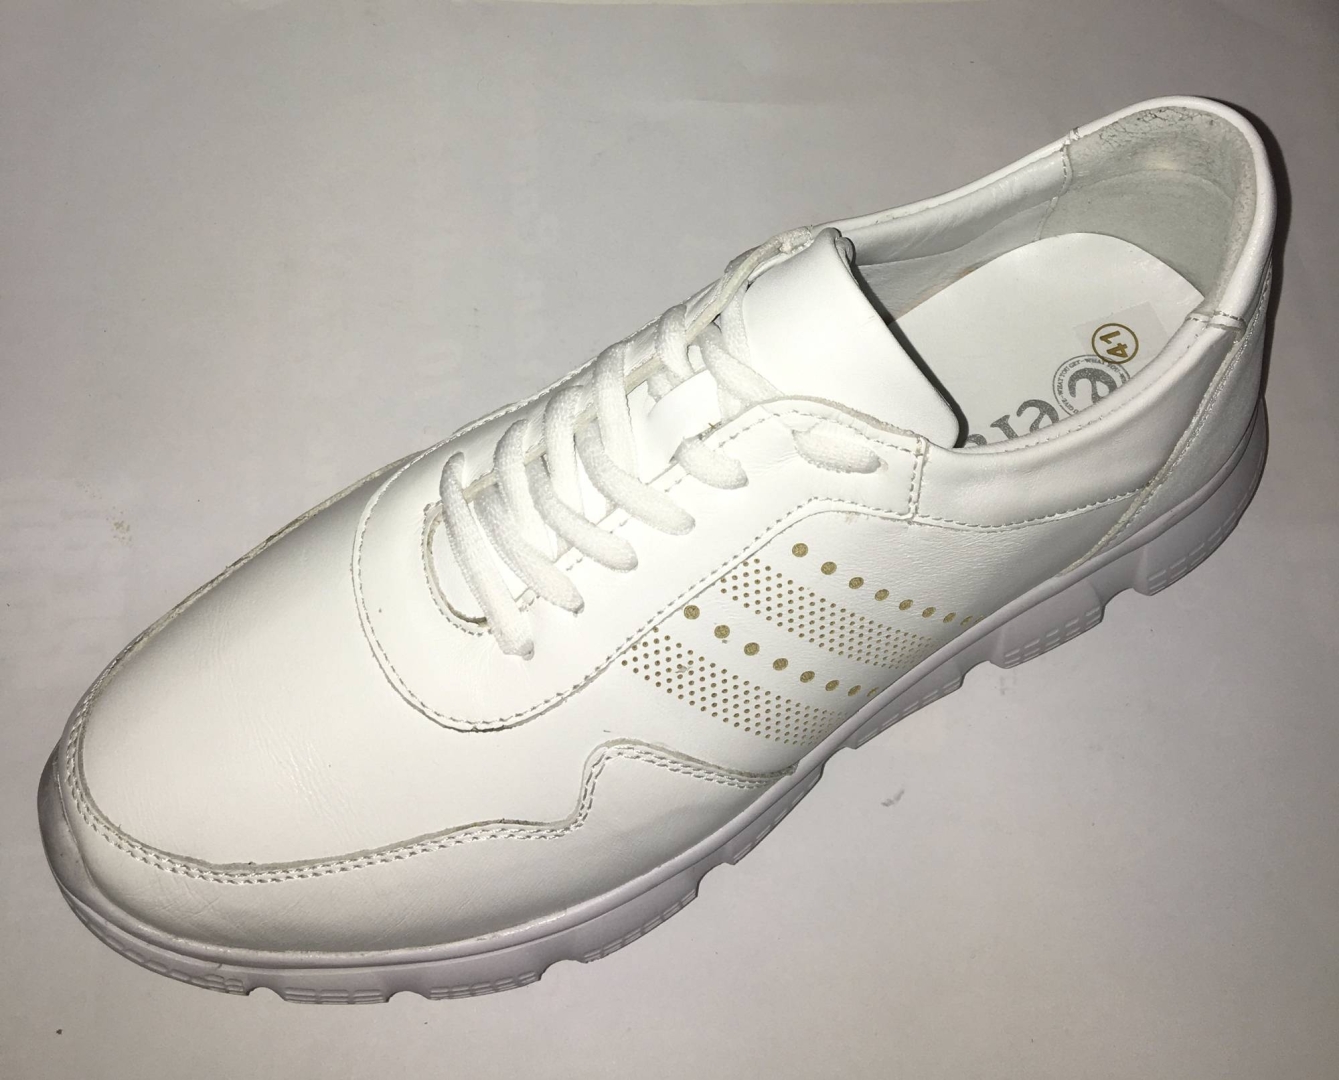 Zapato deportivo para hombre en piel color blanco de ERASESHOES. H-323